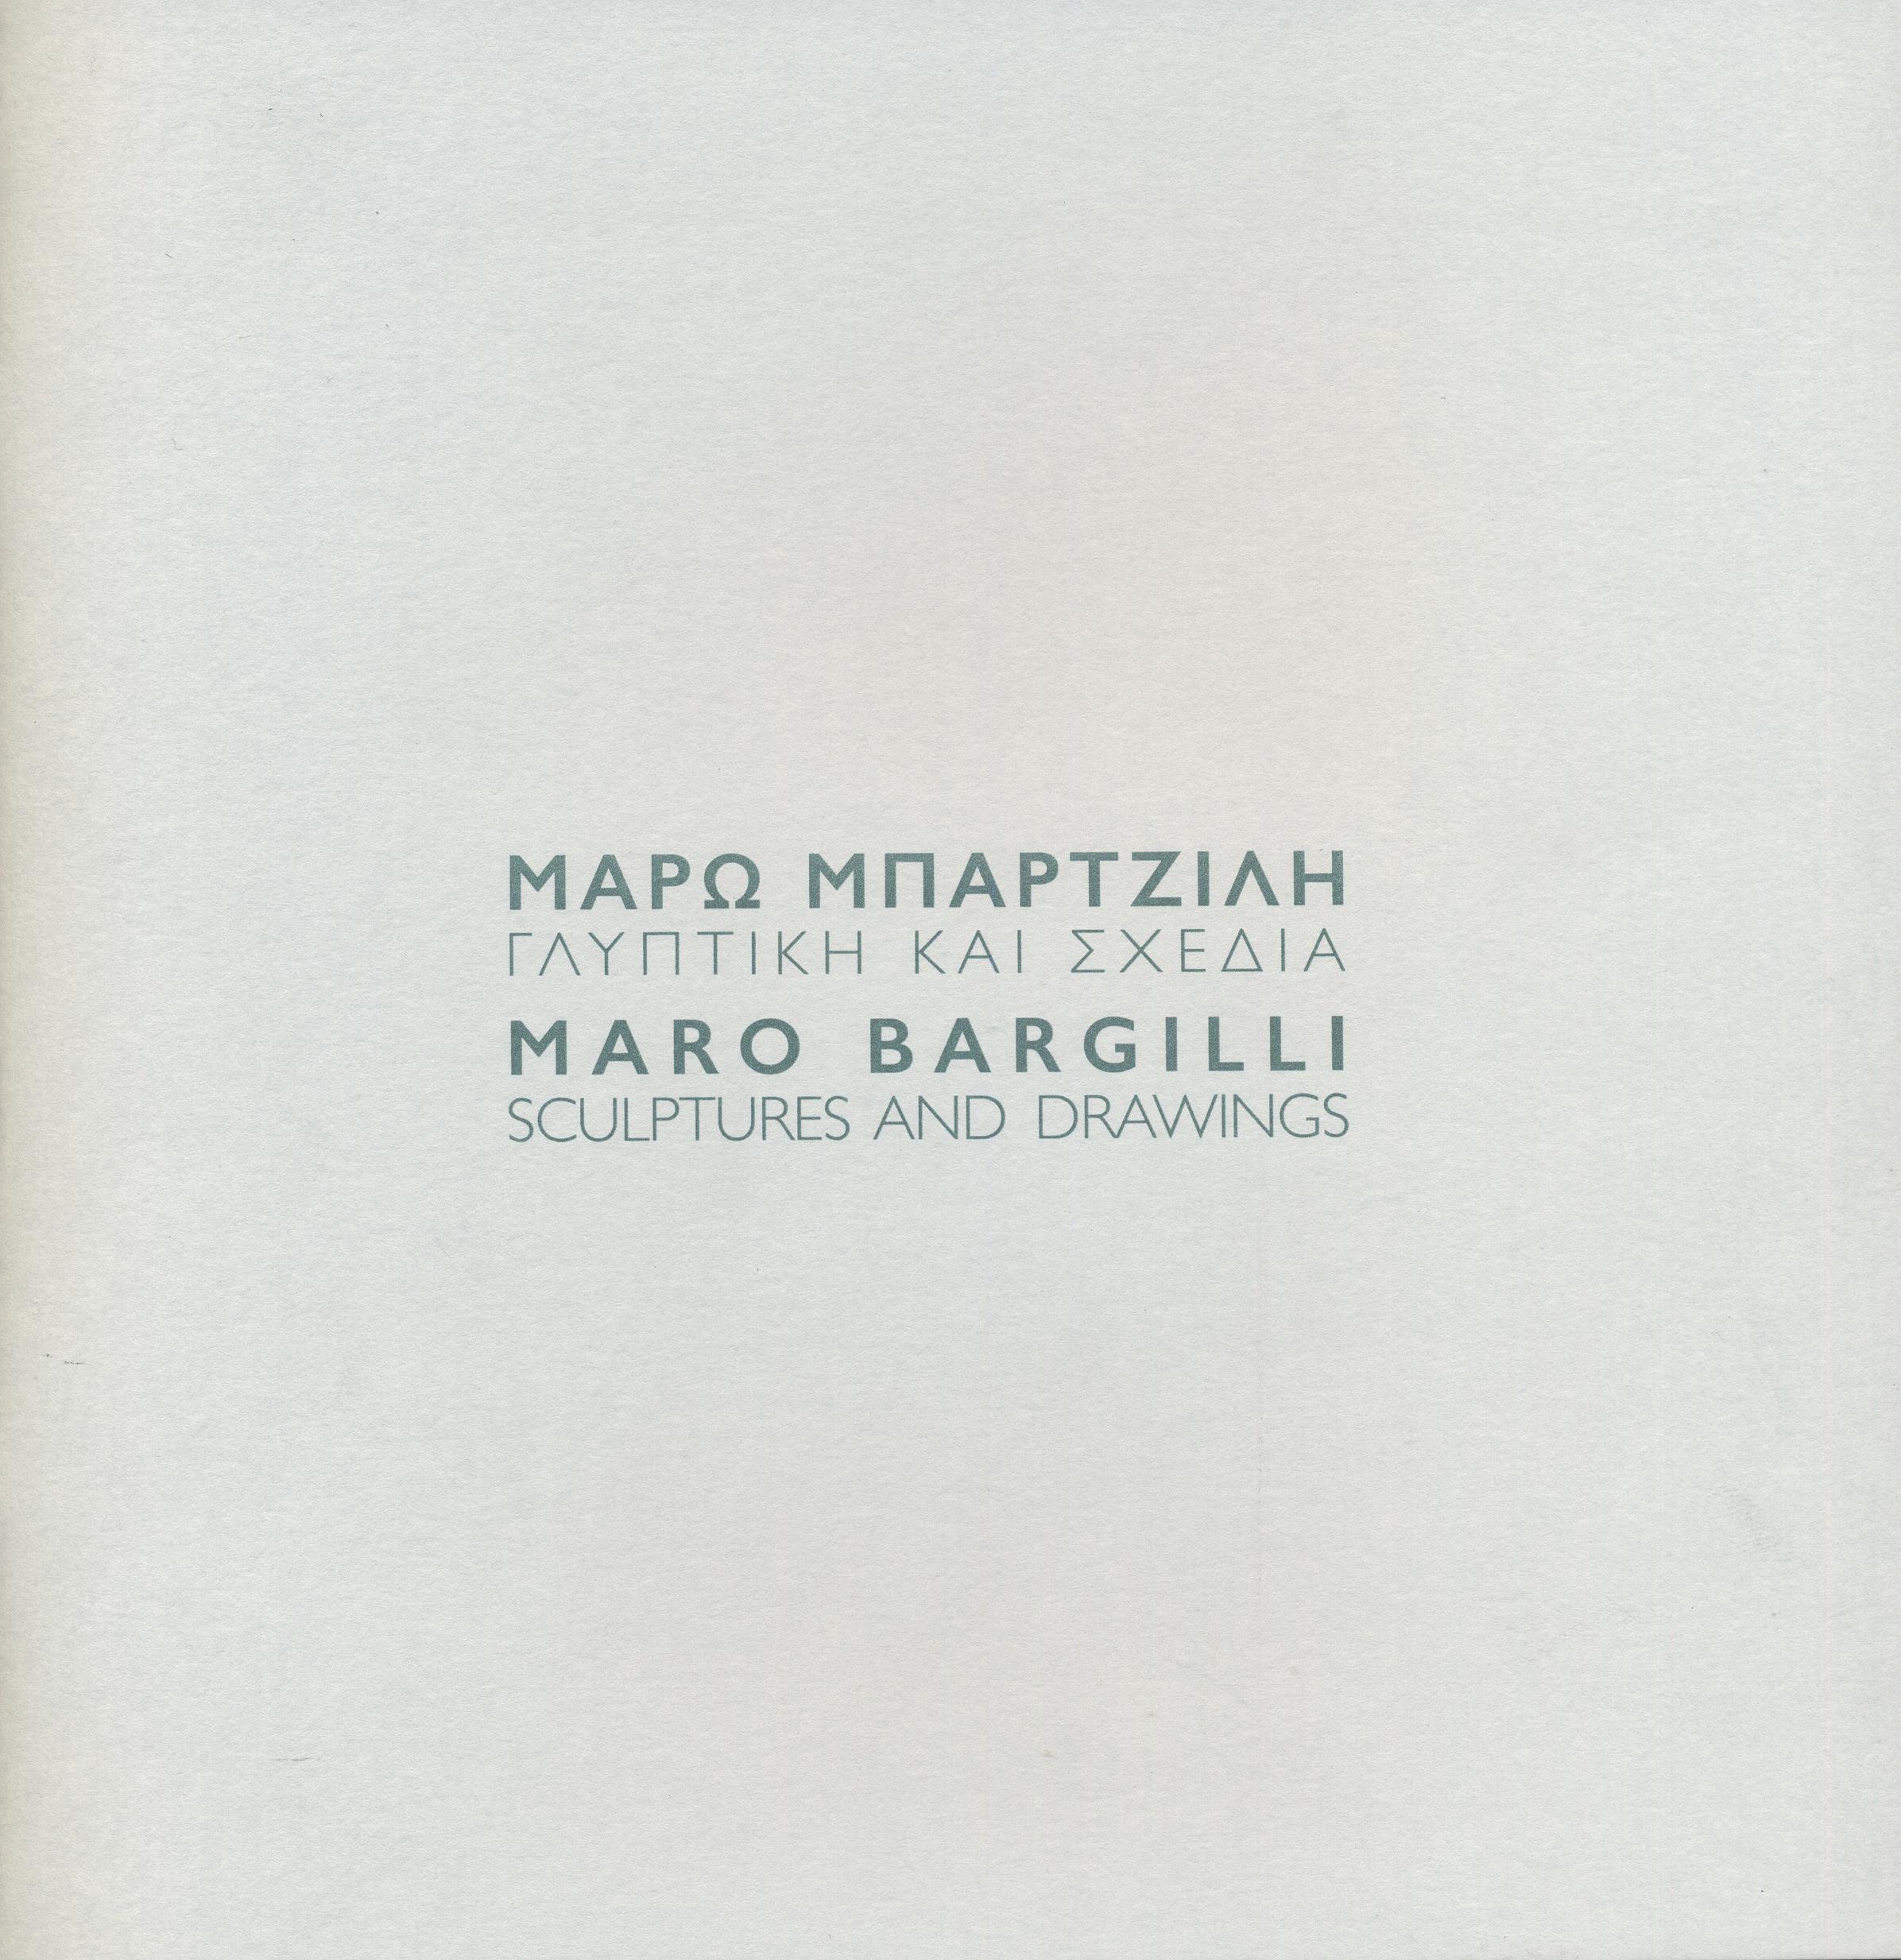 Μάρω Μπαρτζίλη, Γλυπτική και Σχέδια MARO BARGILLI, Sculptures and Drawings